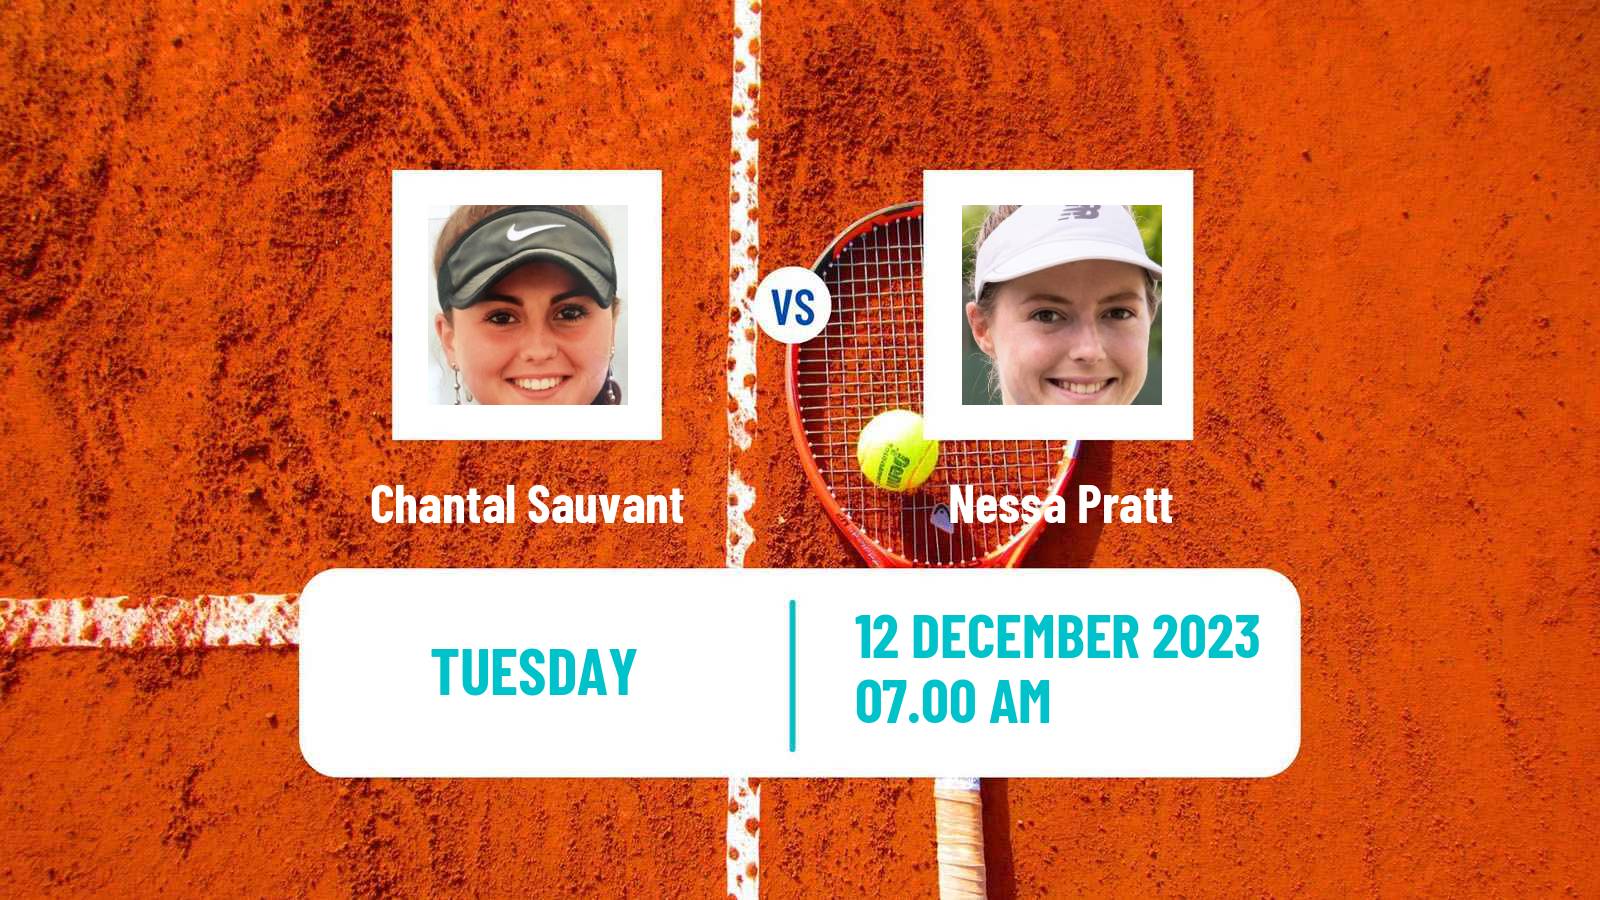 Tennis ITF W15 Melilla Women Chantal Sauvant - Nessa Pratt